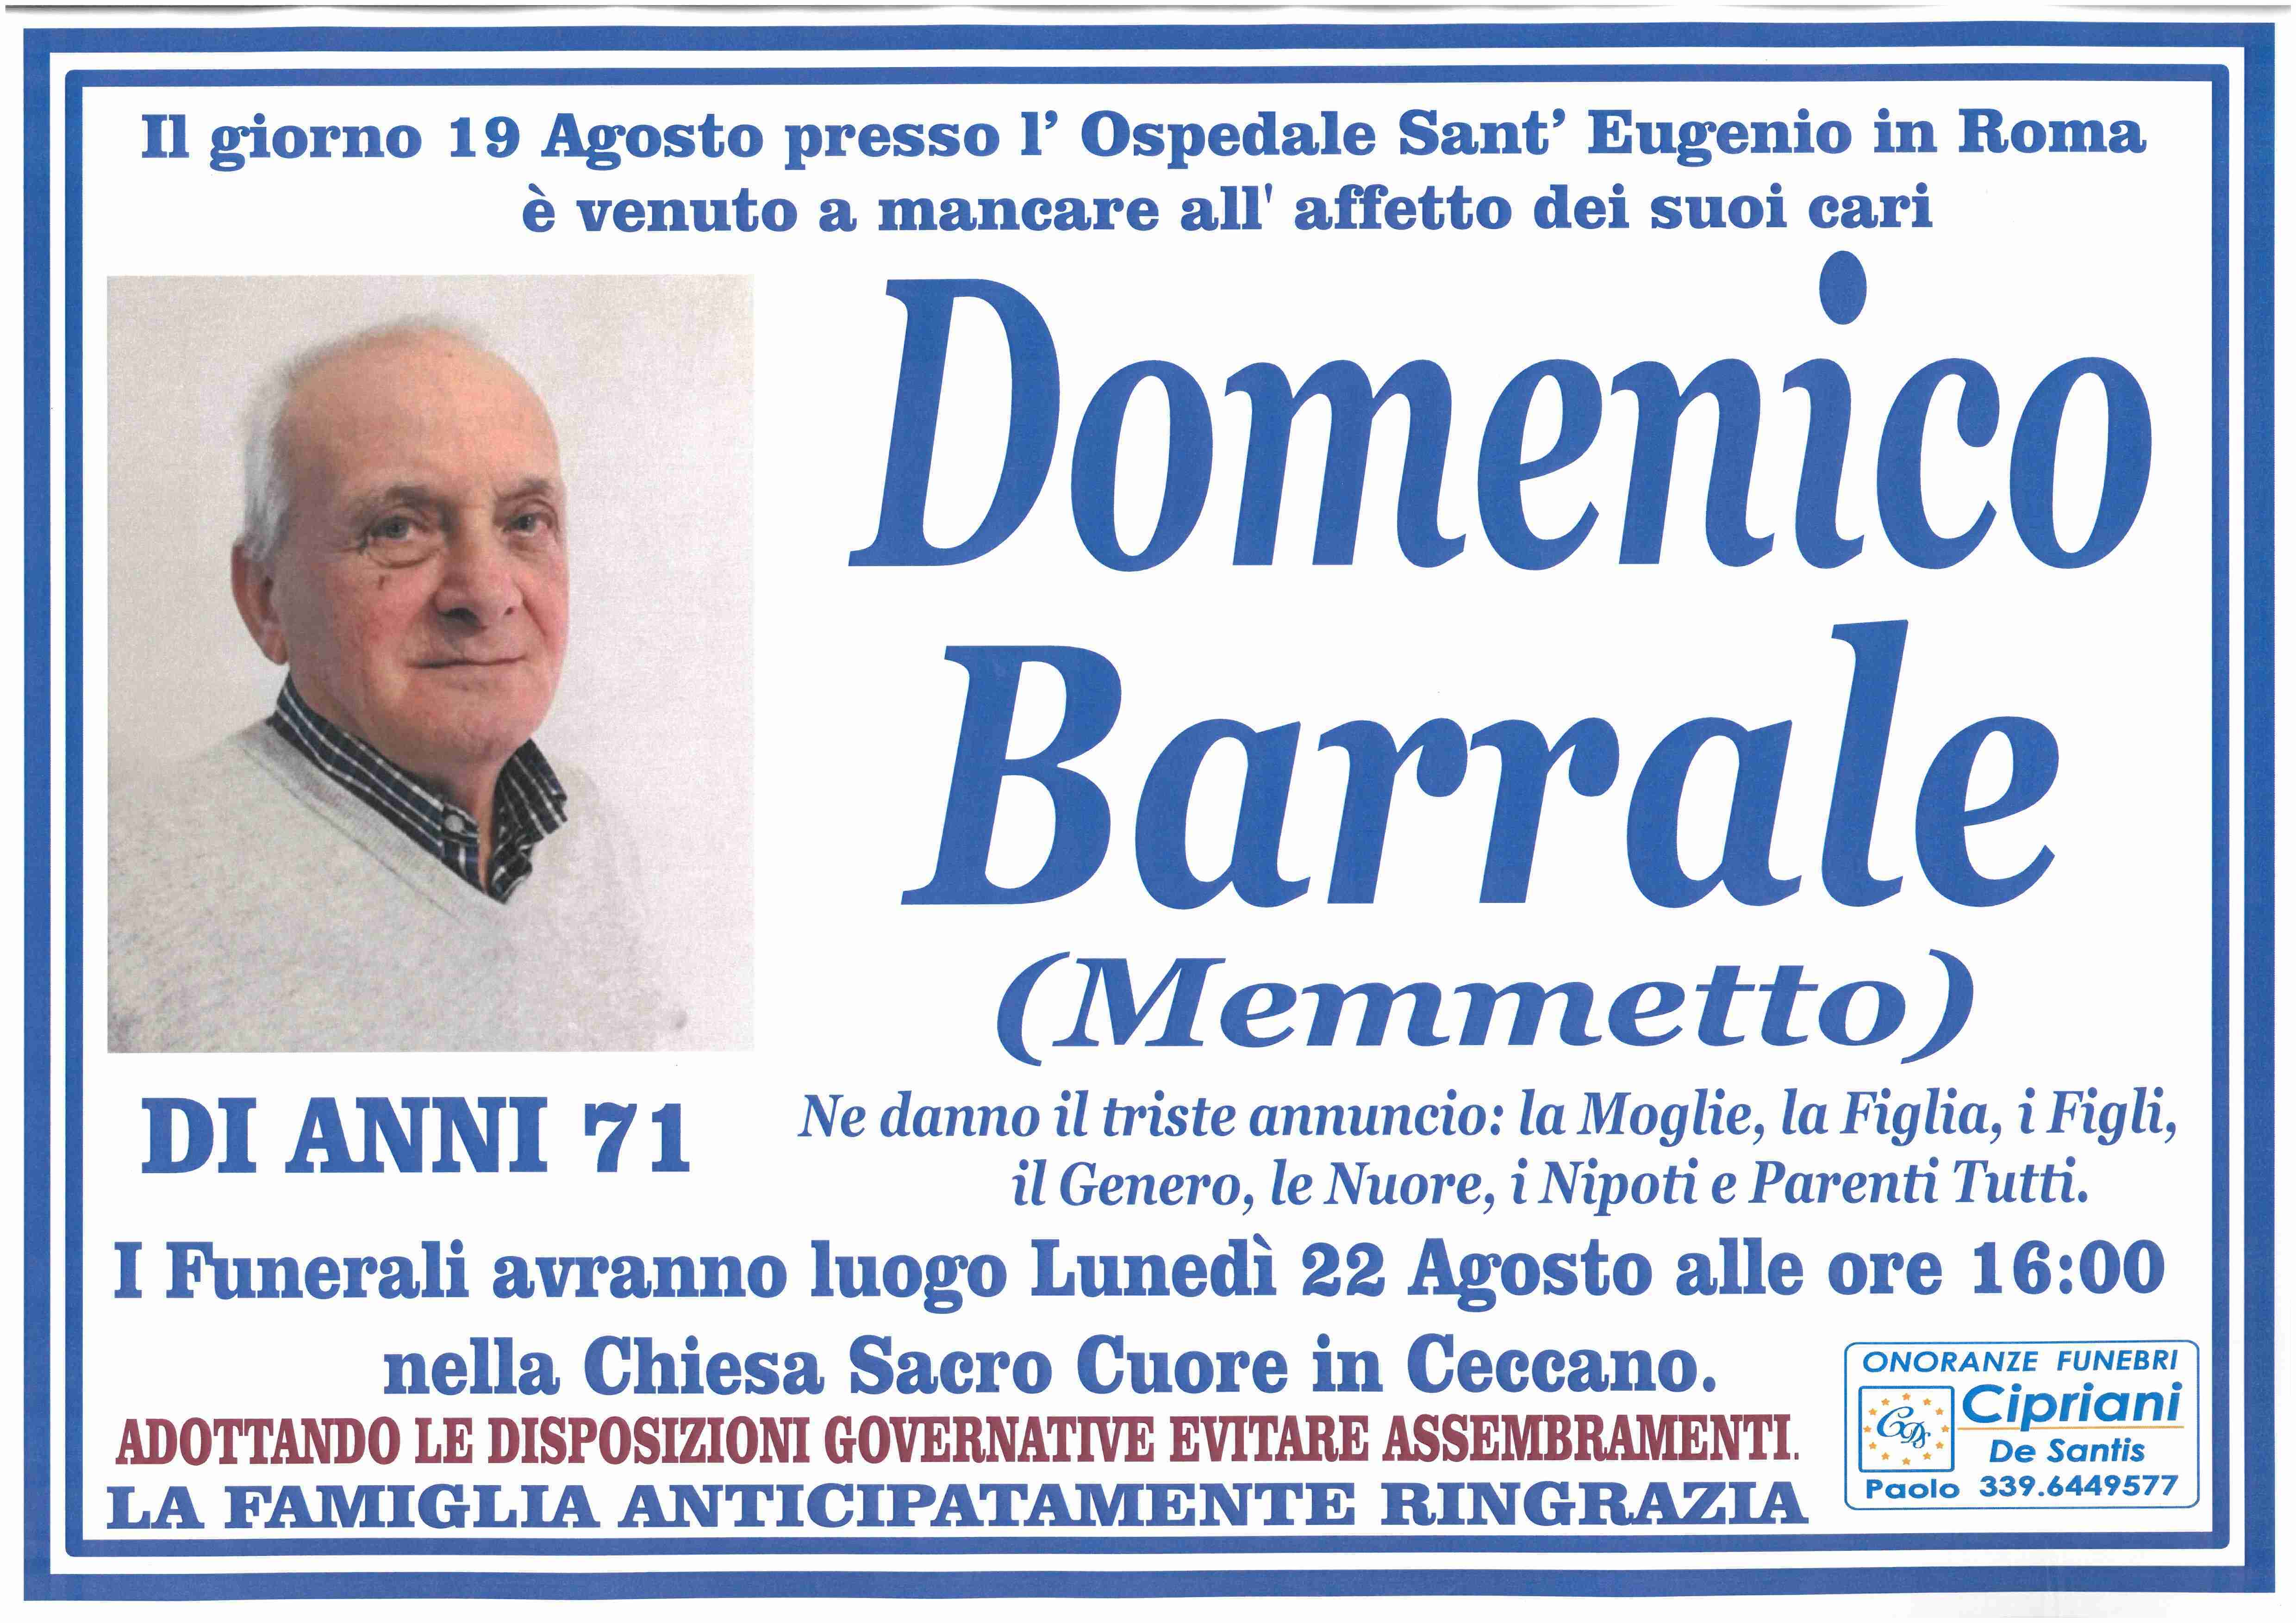 Domenico Barrale